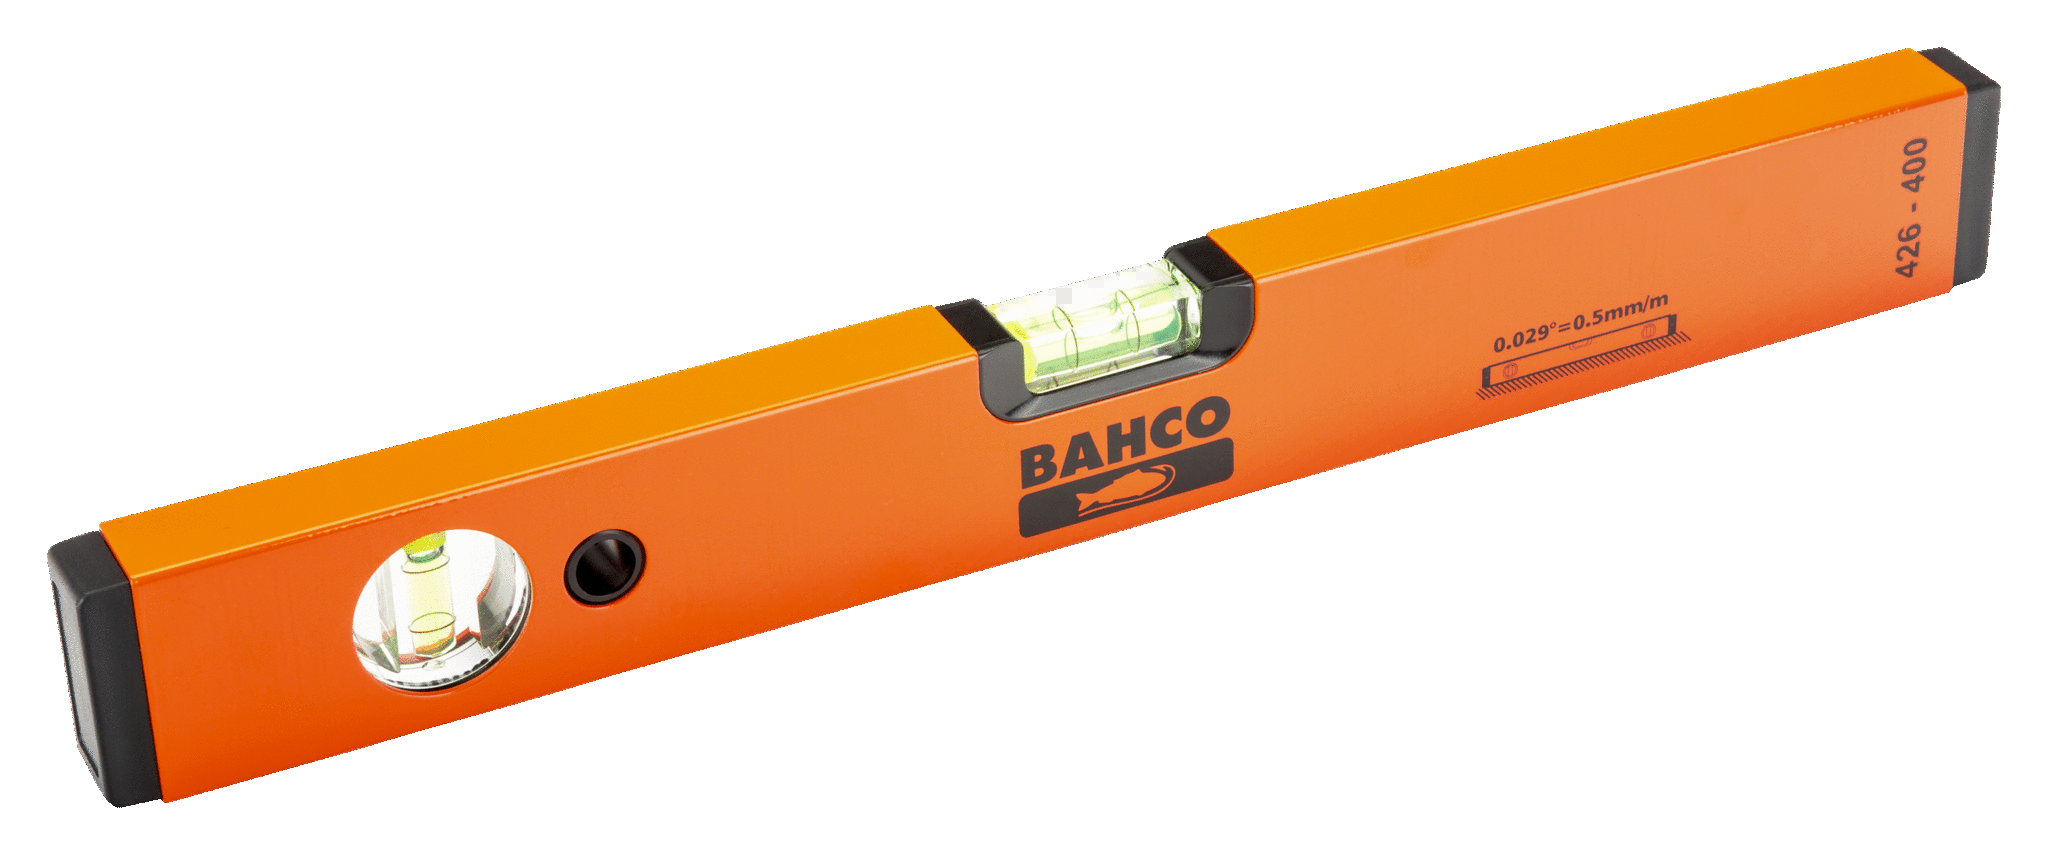 Poziomica 800 mm z 2 poziomami pionowymi BAHCO